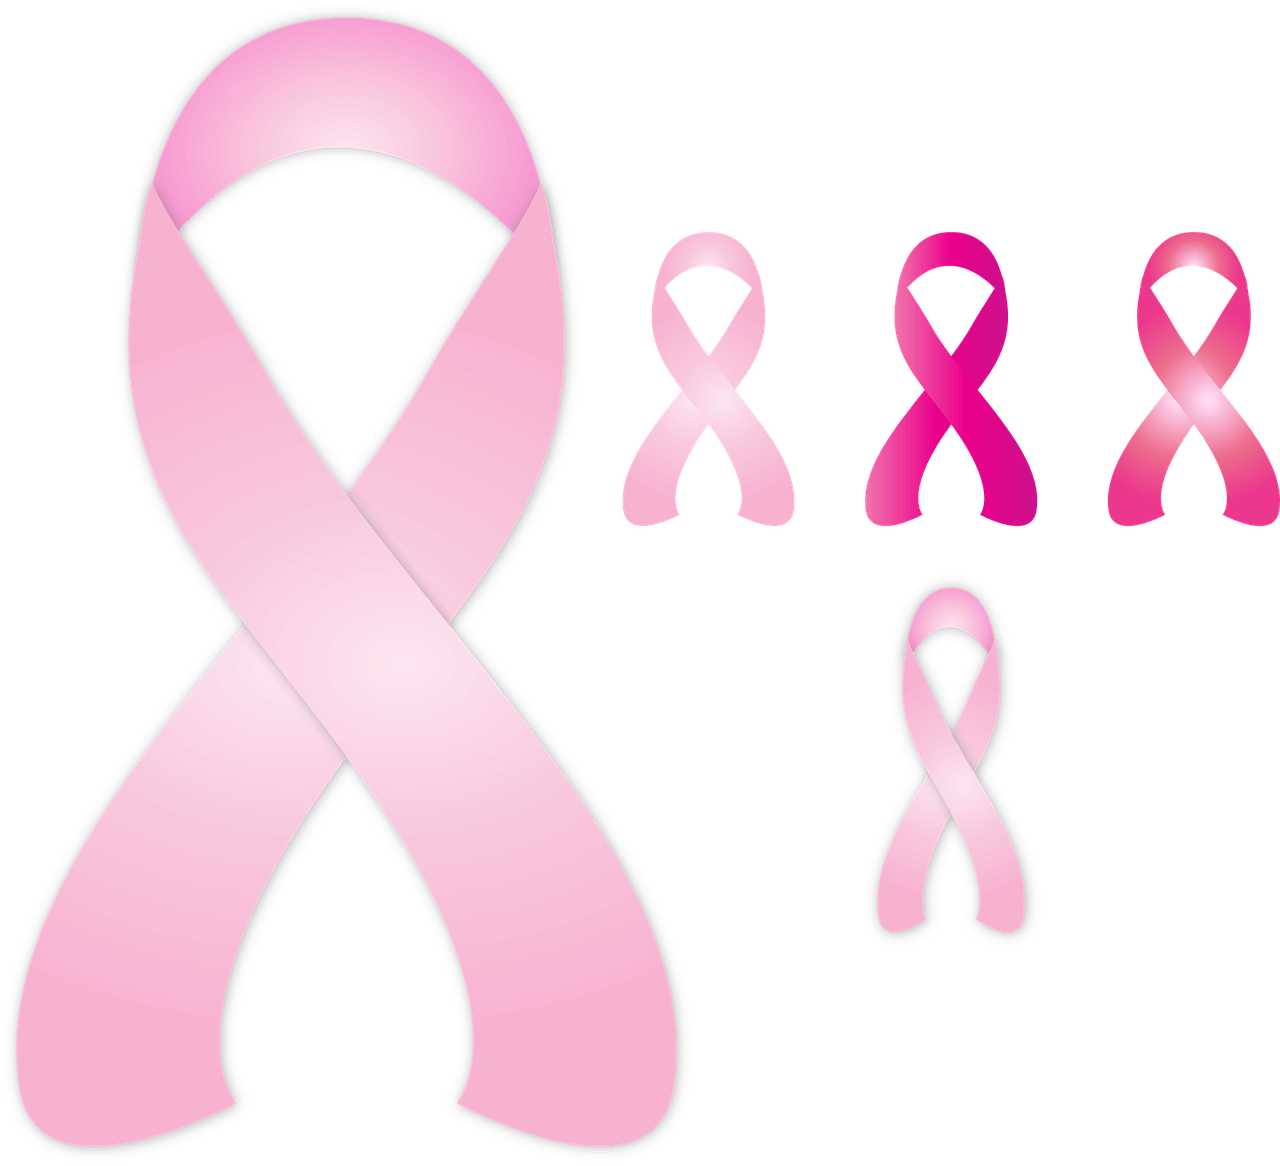 Brustkrebs - Wendepunkt im Leben